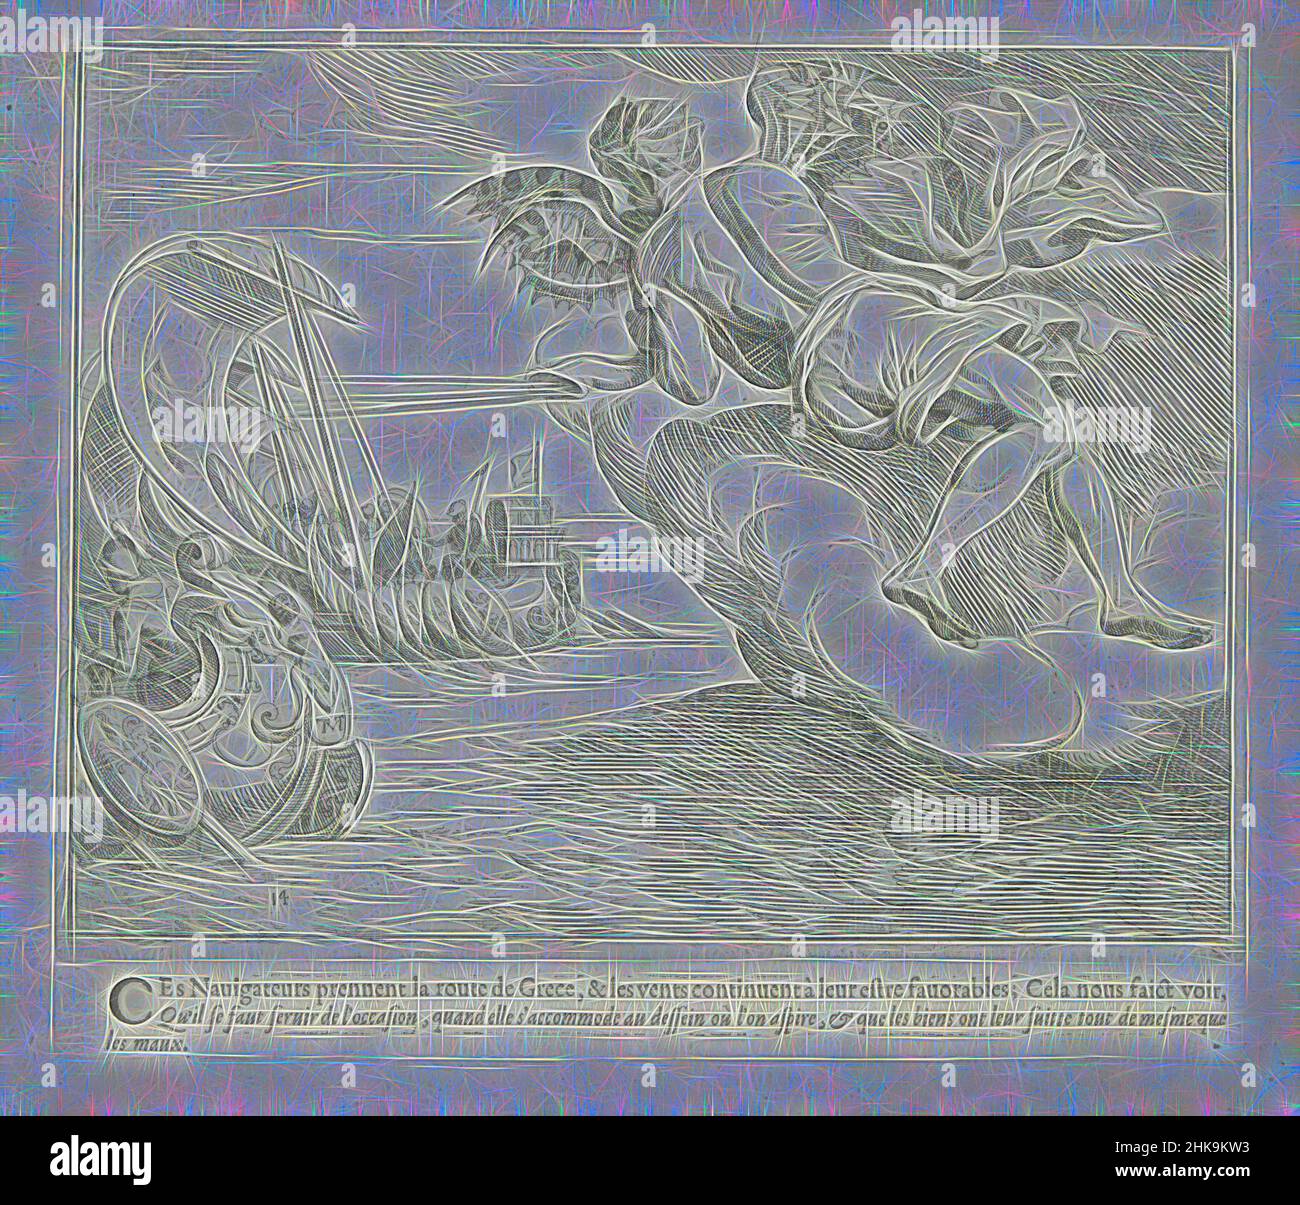 Inspiré par Zephyrus fait avancer le navire d'Odysseus, les travaux d'Ulysse, les œuvres d'Odysseus, Zephyrus, le dieu du vent de l'ouest, fait avancer les navires d'Odysseus. L'imprimé fait partie d'un album., imprimeur: Theodoor van Thulden, dessinateur intermédiaire: Theodoor van Thulden, Paris, 1633, papier, réimaginé par Artotop. L'art classique réinventé avec une touche moderne. Conception de lumière chaleureuse et gaie, de luminosité et de rayonnement de lumière. La photographie s'inspire du surréalisme et du futurisme, embrassant l'énergie dynamique de la technologie moderne, du mouvement, de la vitesse et révolutionne la culture Banque D'Images